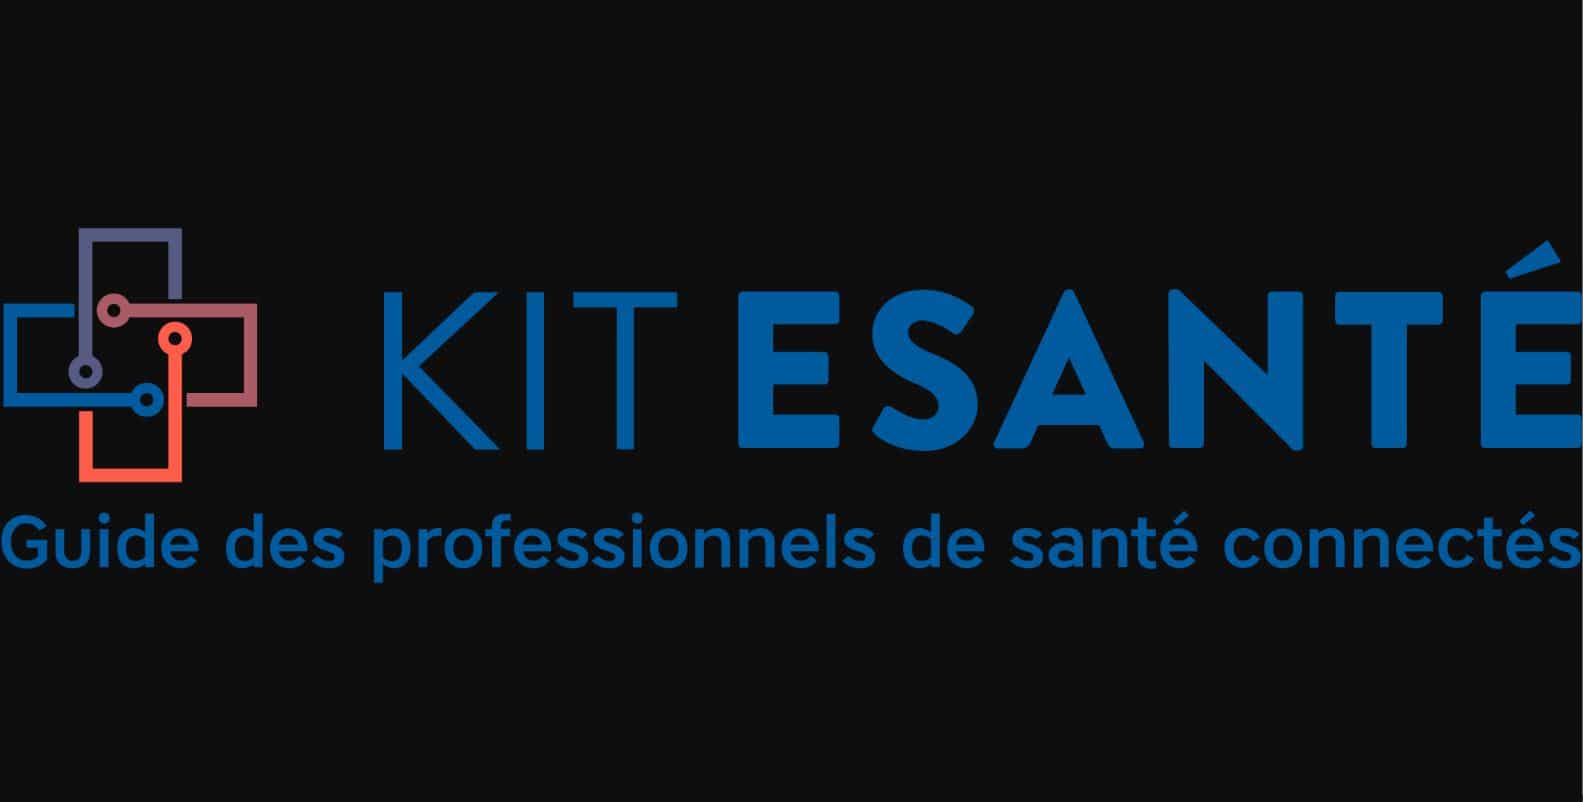 Kit-eSanté : logo de la marque plateforme avec le slogan 'guide des professionnels de santé connectés'.